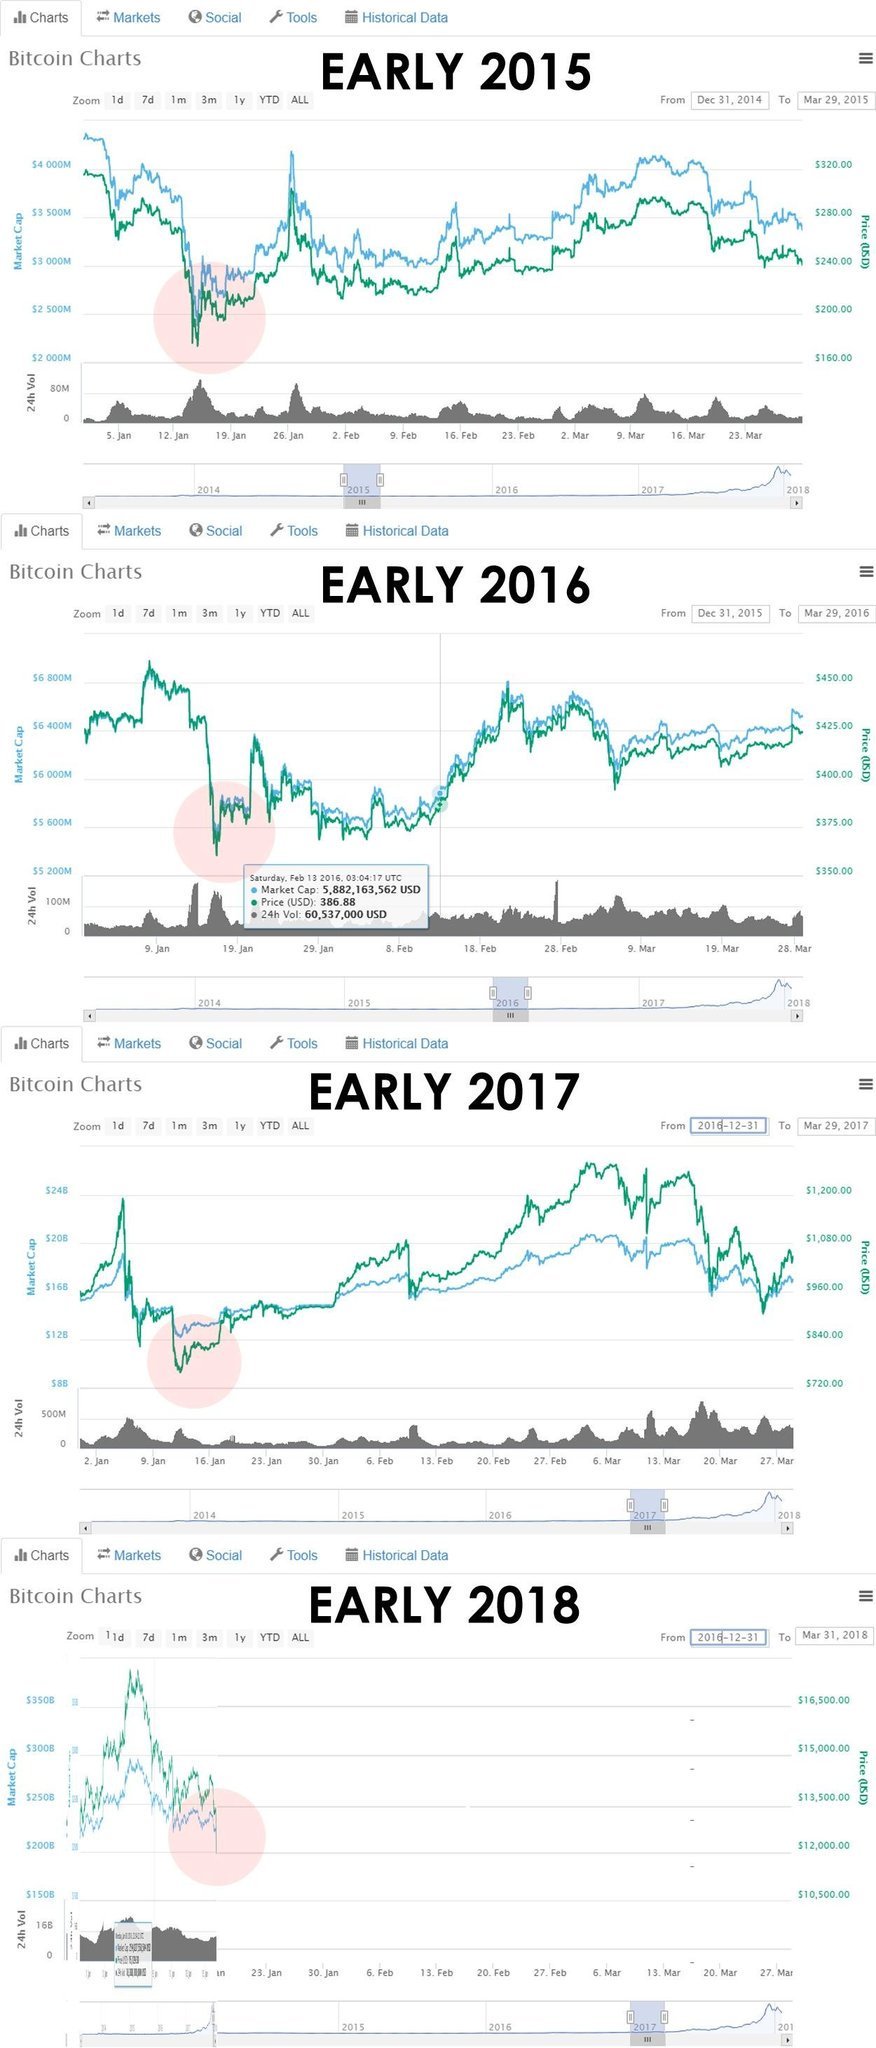 Crypto Yearly Charts